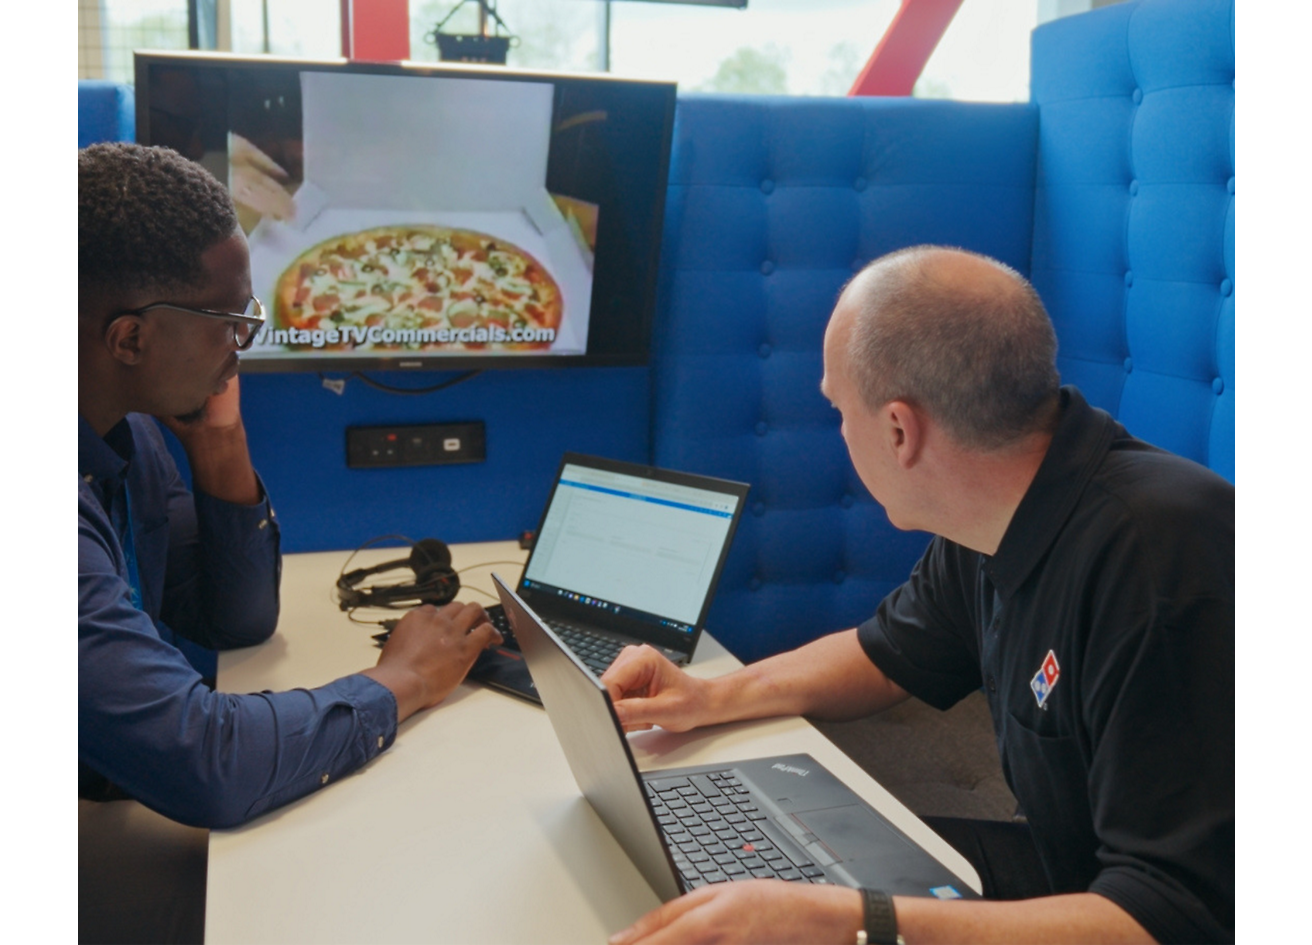 兩個人坐在膝上型電腦旁討論 Dominos Pizza